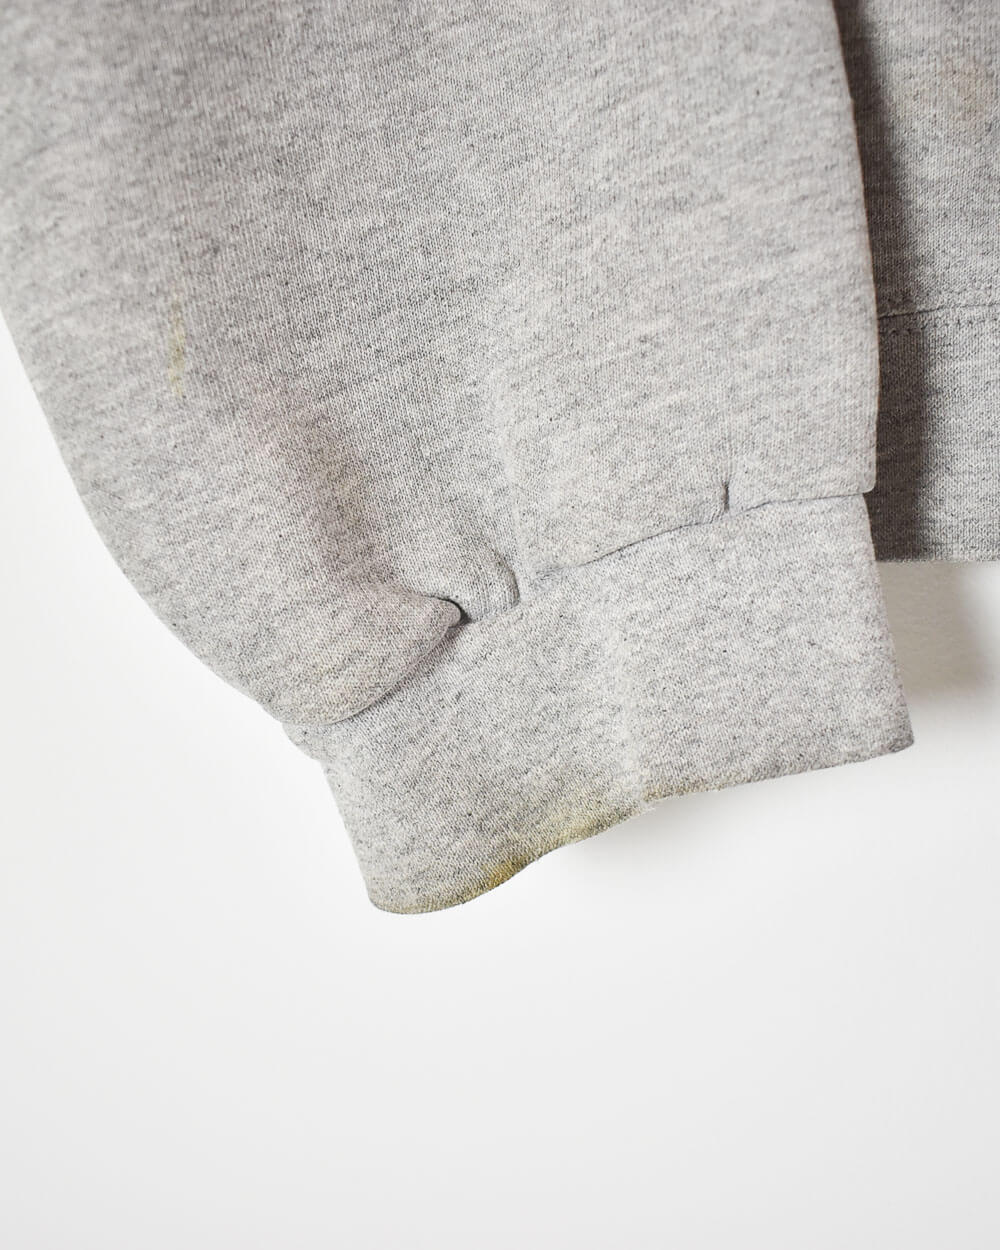 Stone Nike Sweatshirt - Large